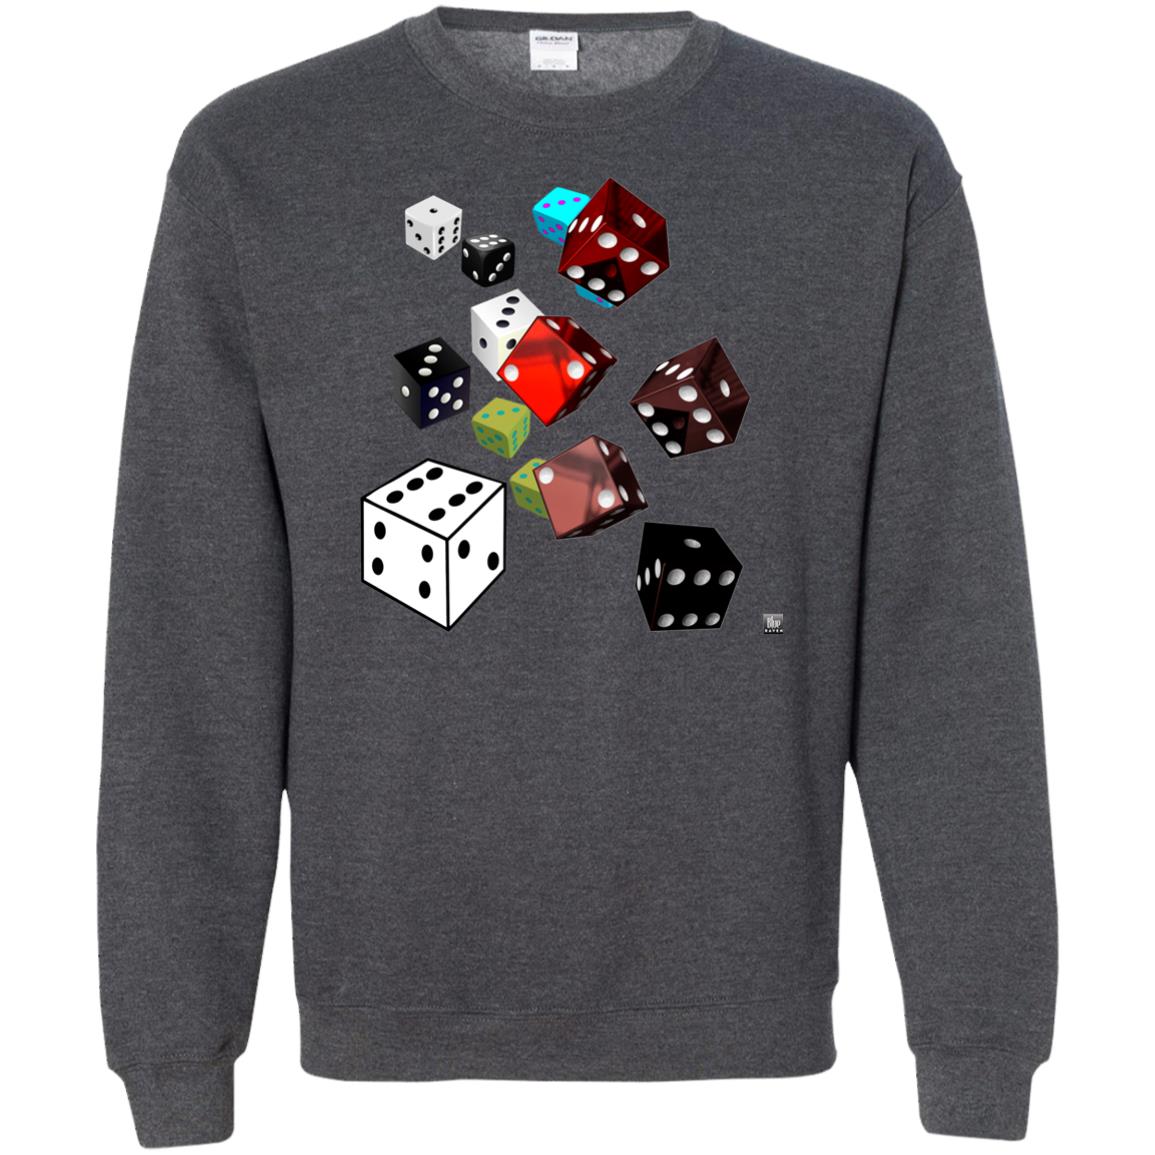 roll of the dice - Men's Crew Neck Sweatshirt